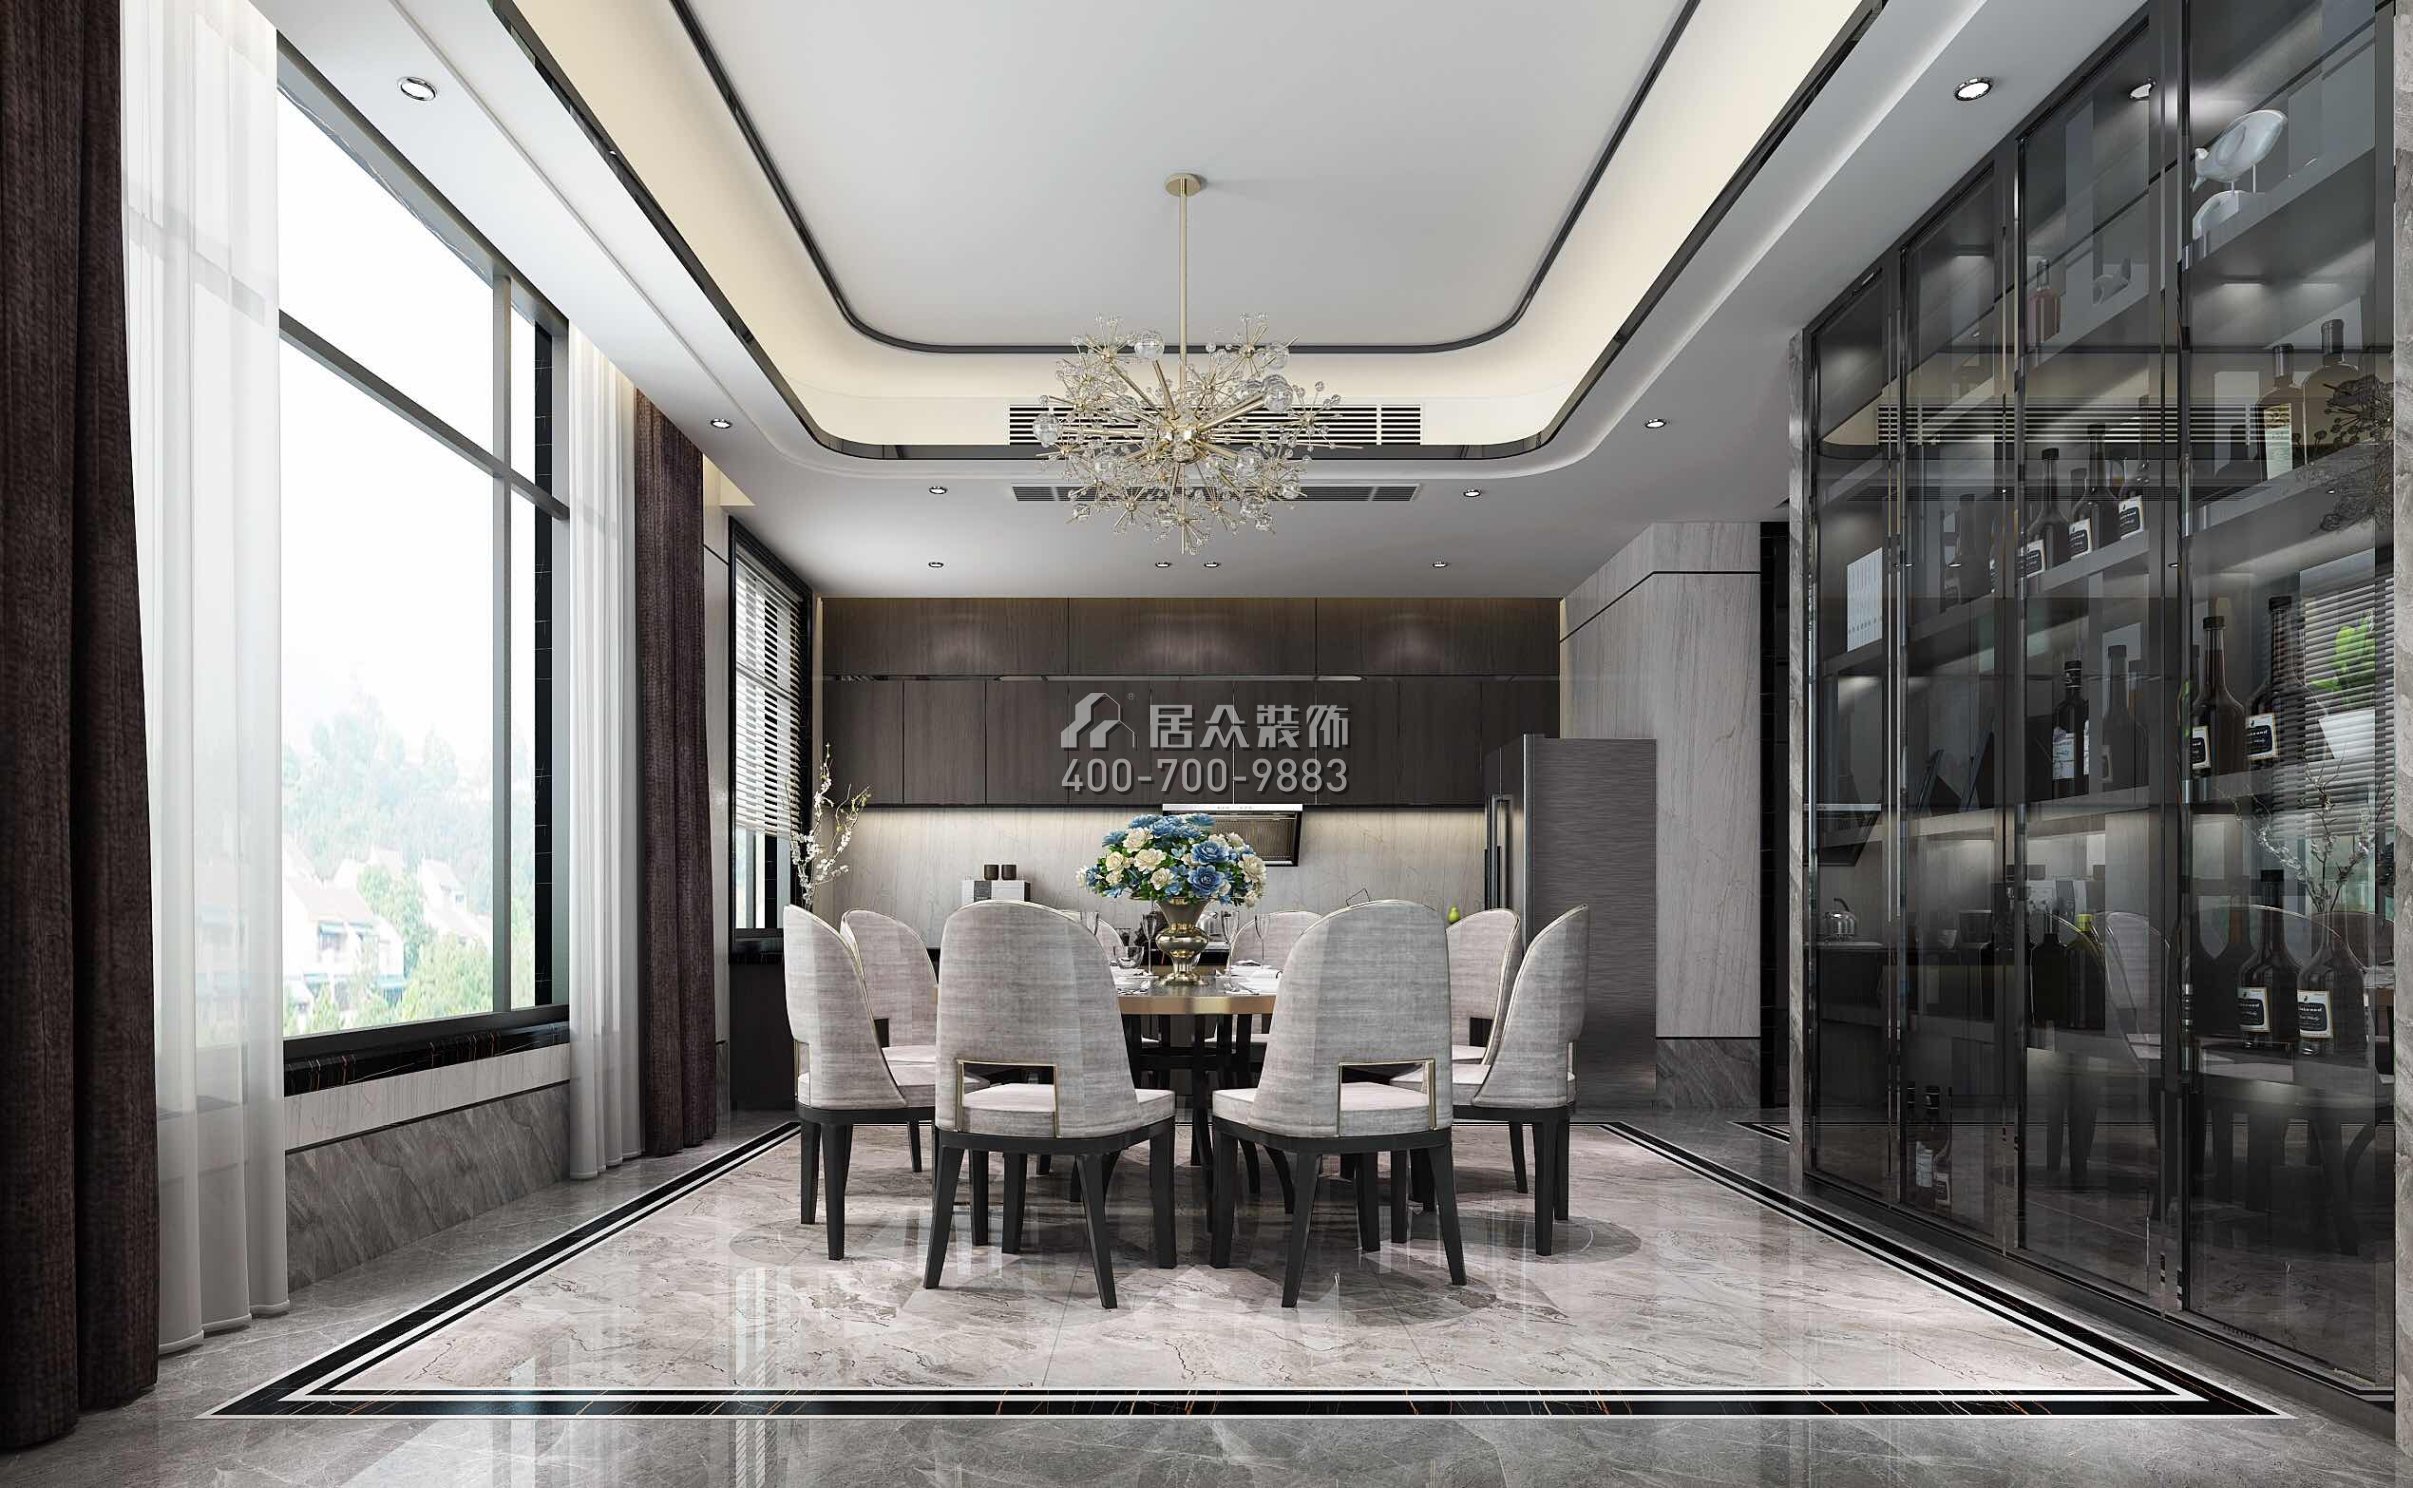 龍光水悅龍灣500平方米現代簡約風格別墅戶型餐廳裝修效果圖